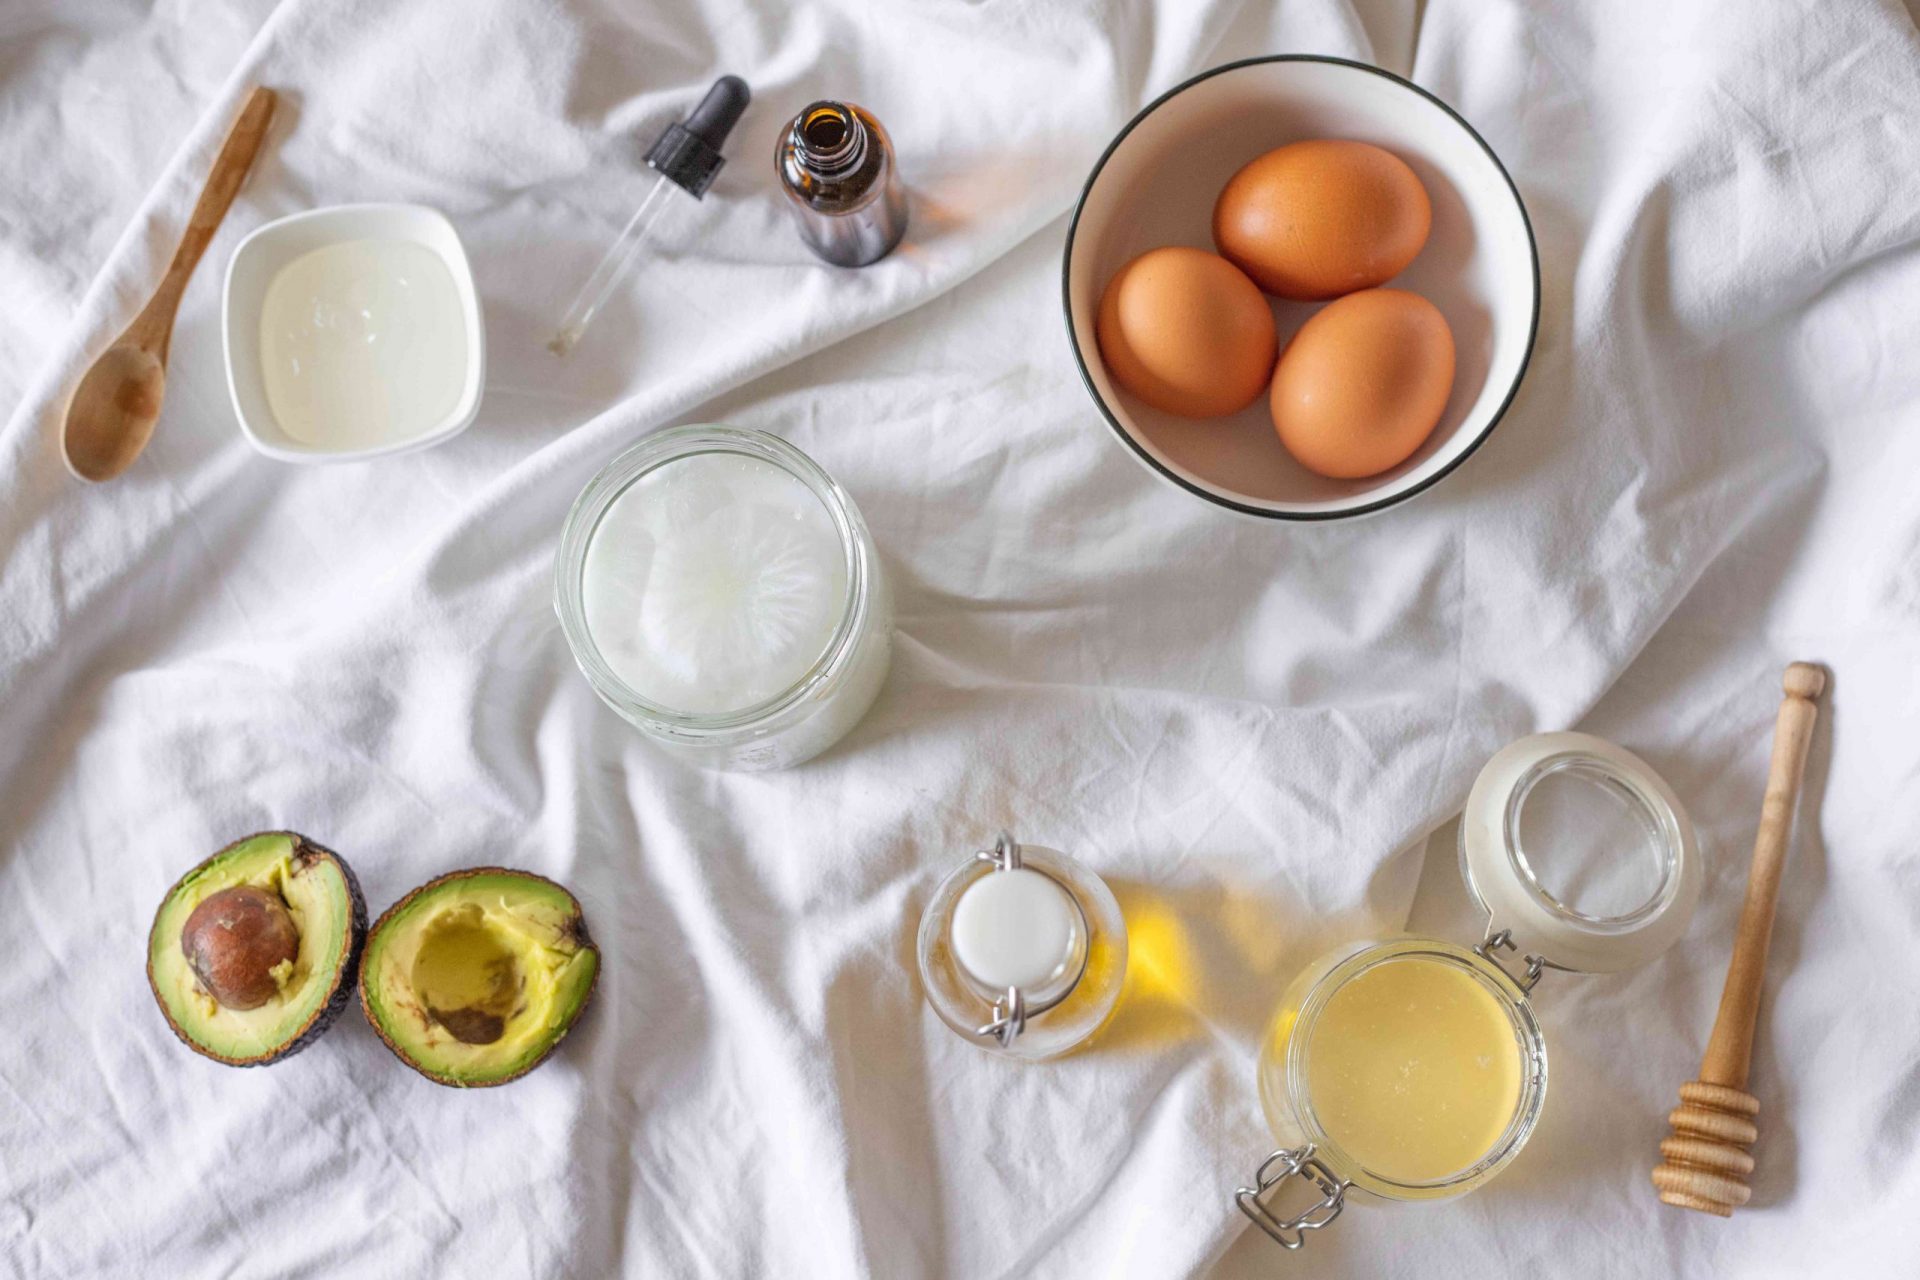 plano de los ingredientes utilizados para hacer la mascarilla capilar DIY: huevos, aguacate, aceite de coco, etc.